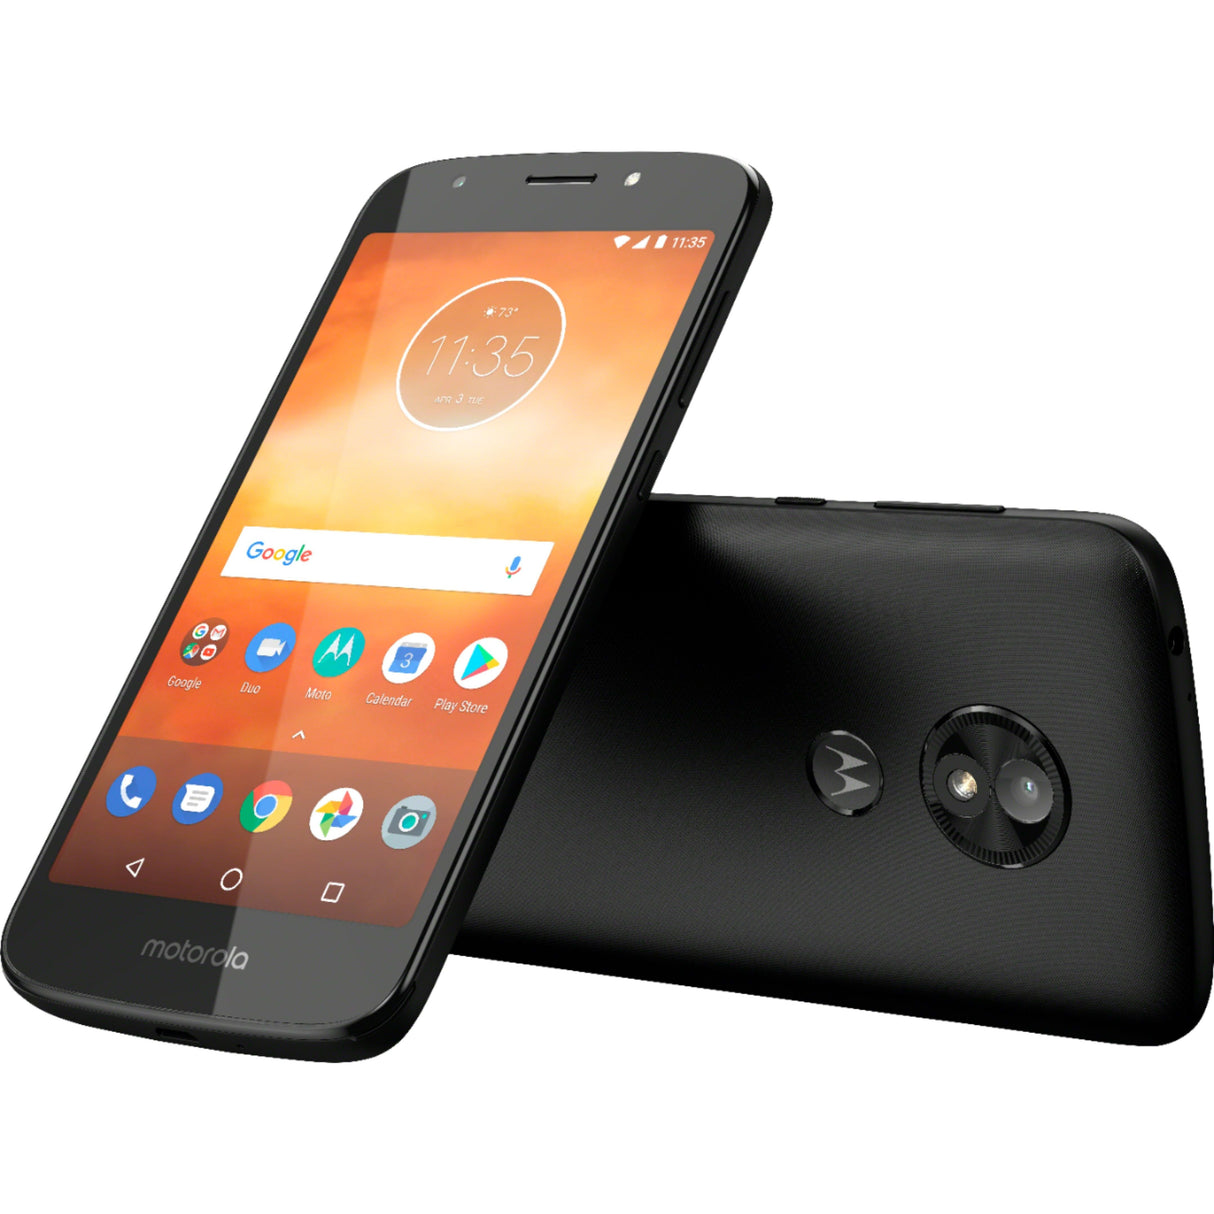 Motorola Moto E5 go - 16 GB - Black - Verizon - CDMA/GSM